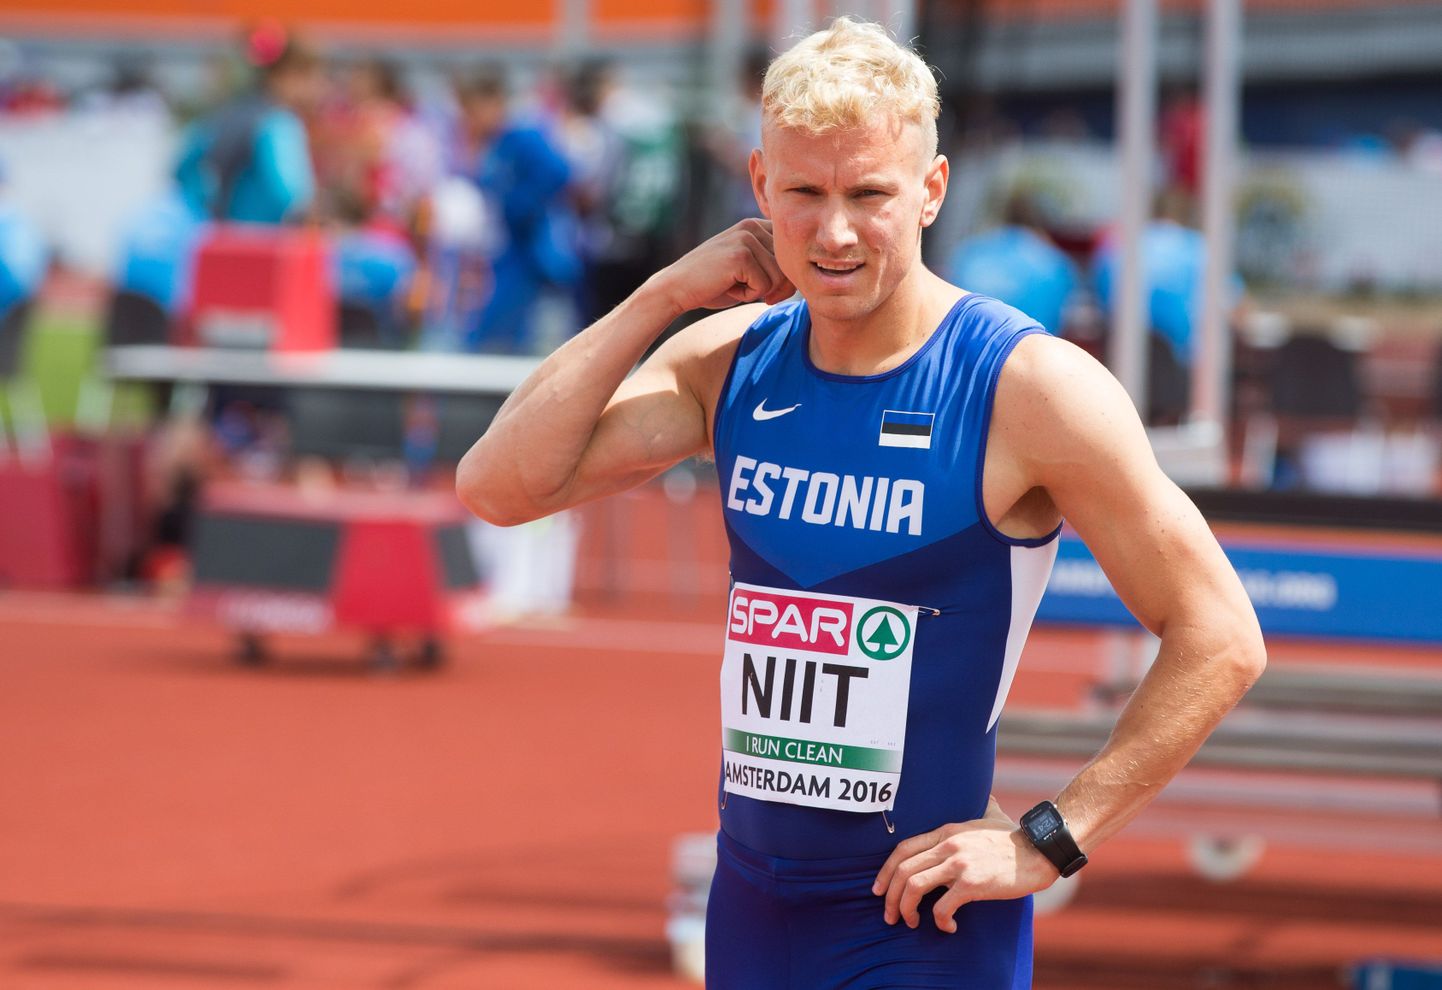 KUNAGI IKKA: Millal uus rekord tuleb, Marek Niit ei tea, aga eks ta kunagi ikka tuleb.